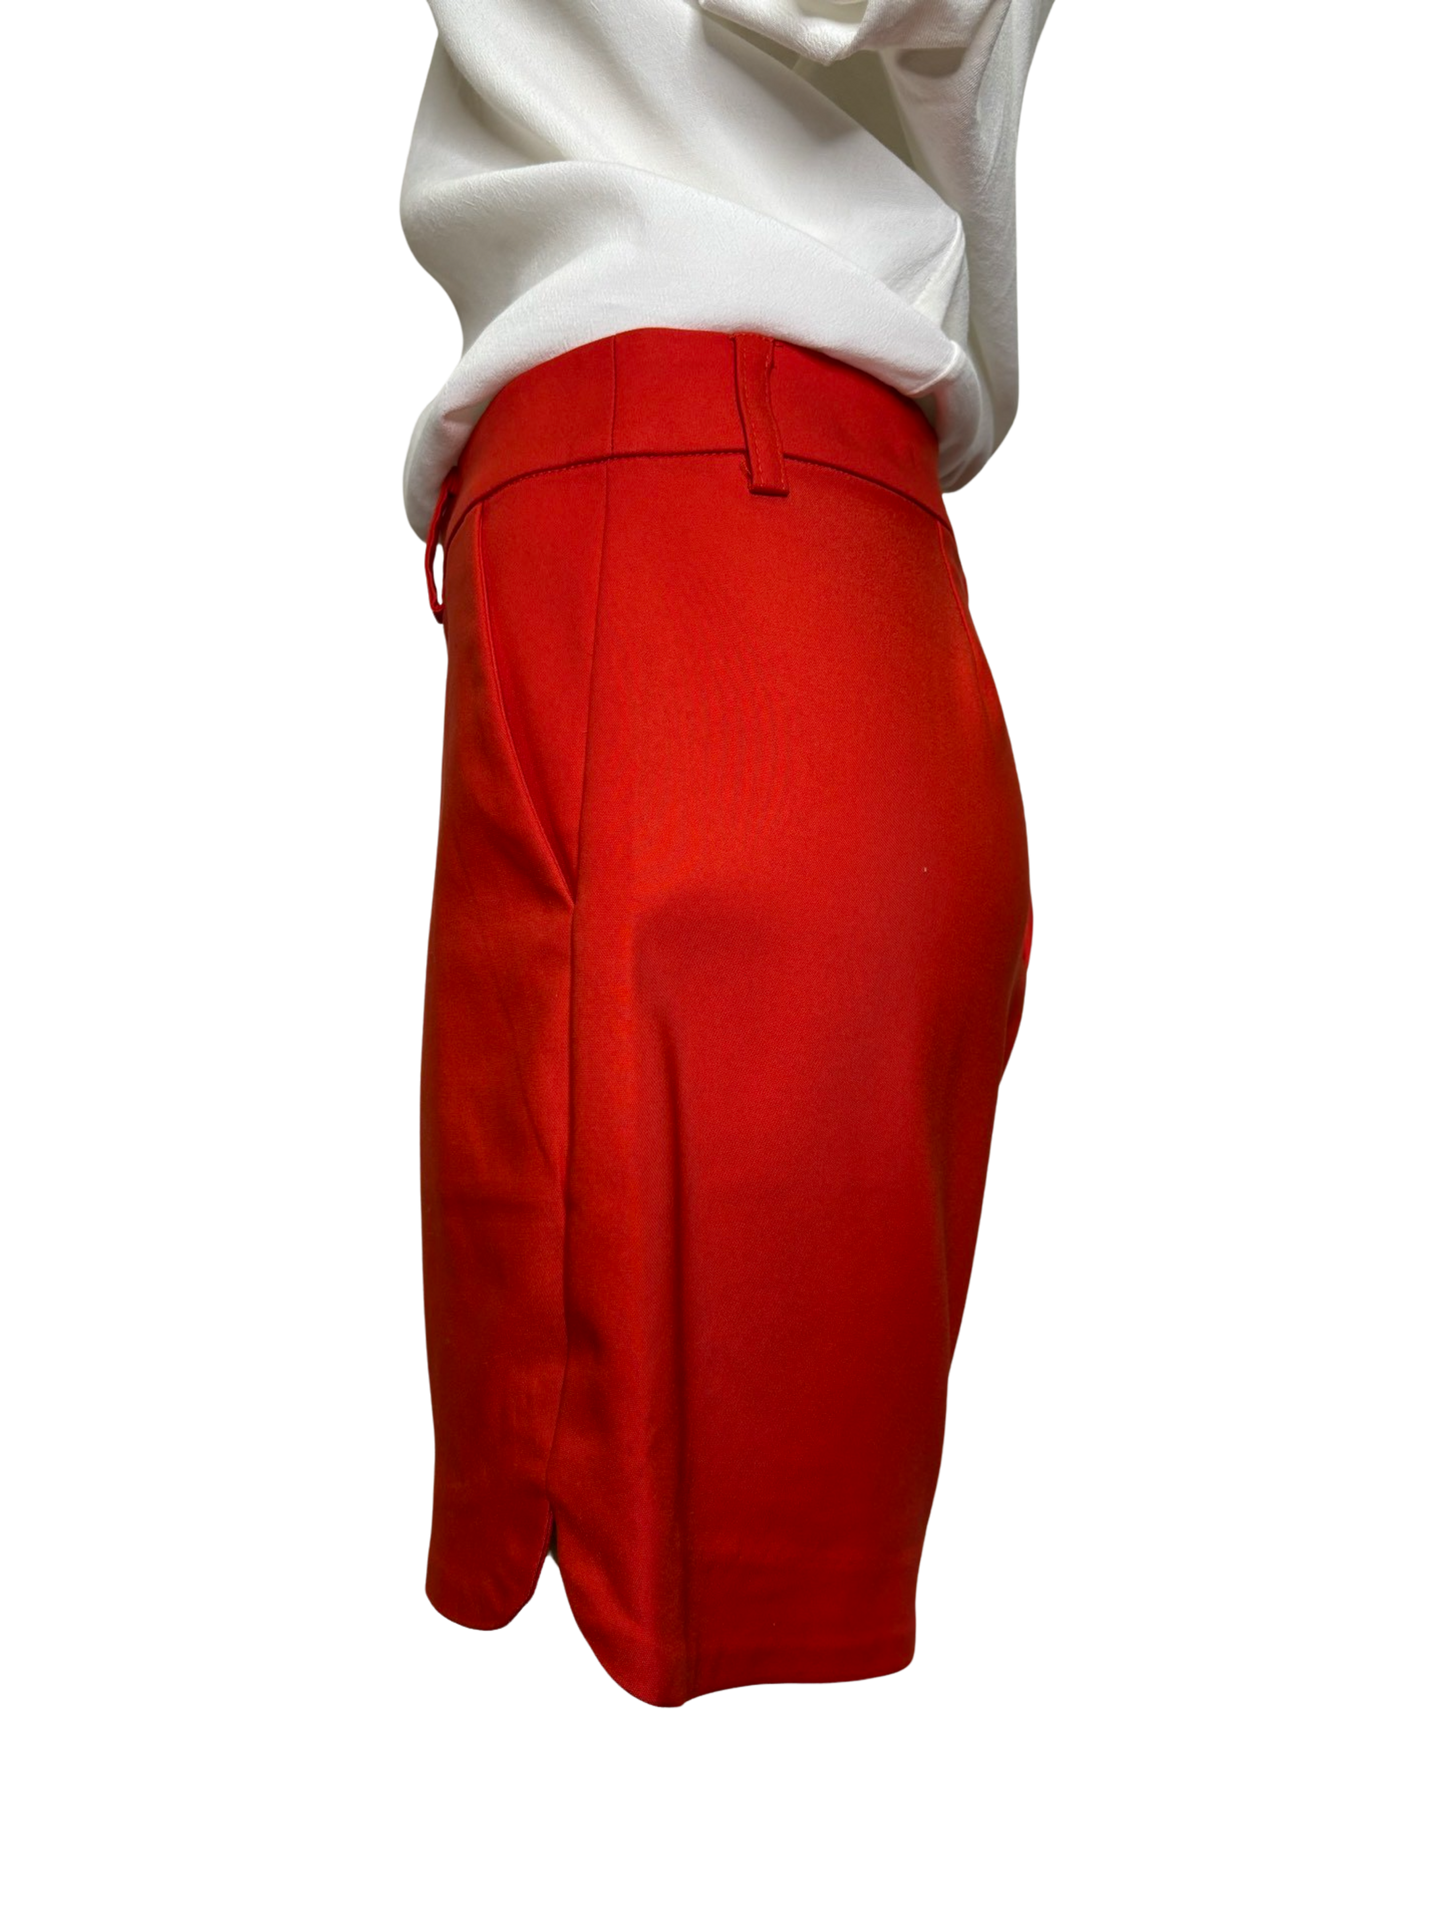 Jade Red Shorts